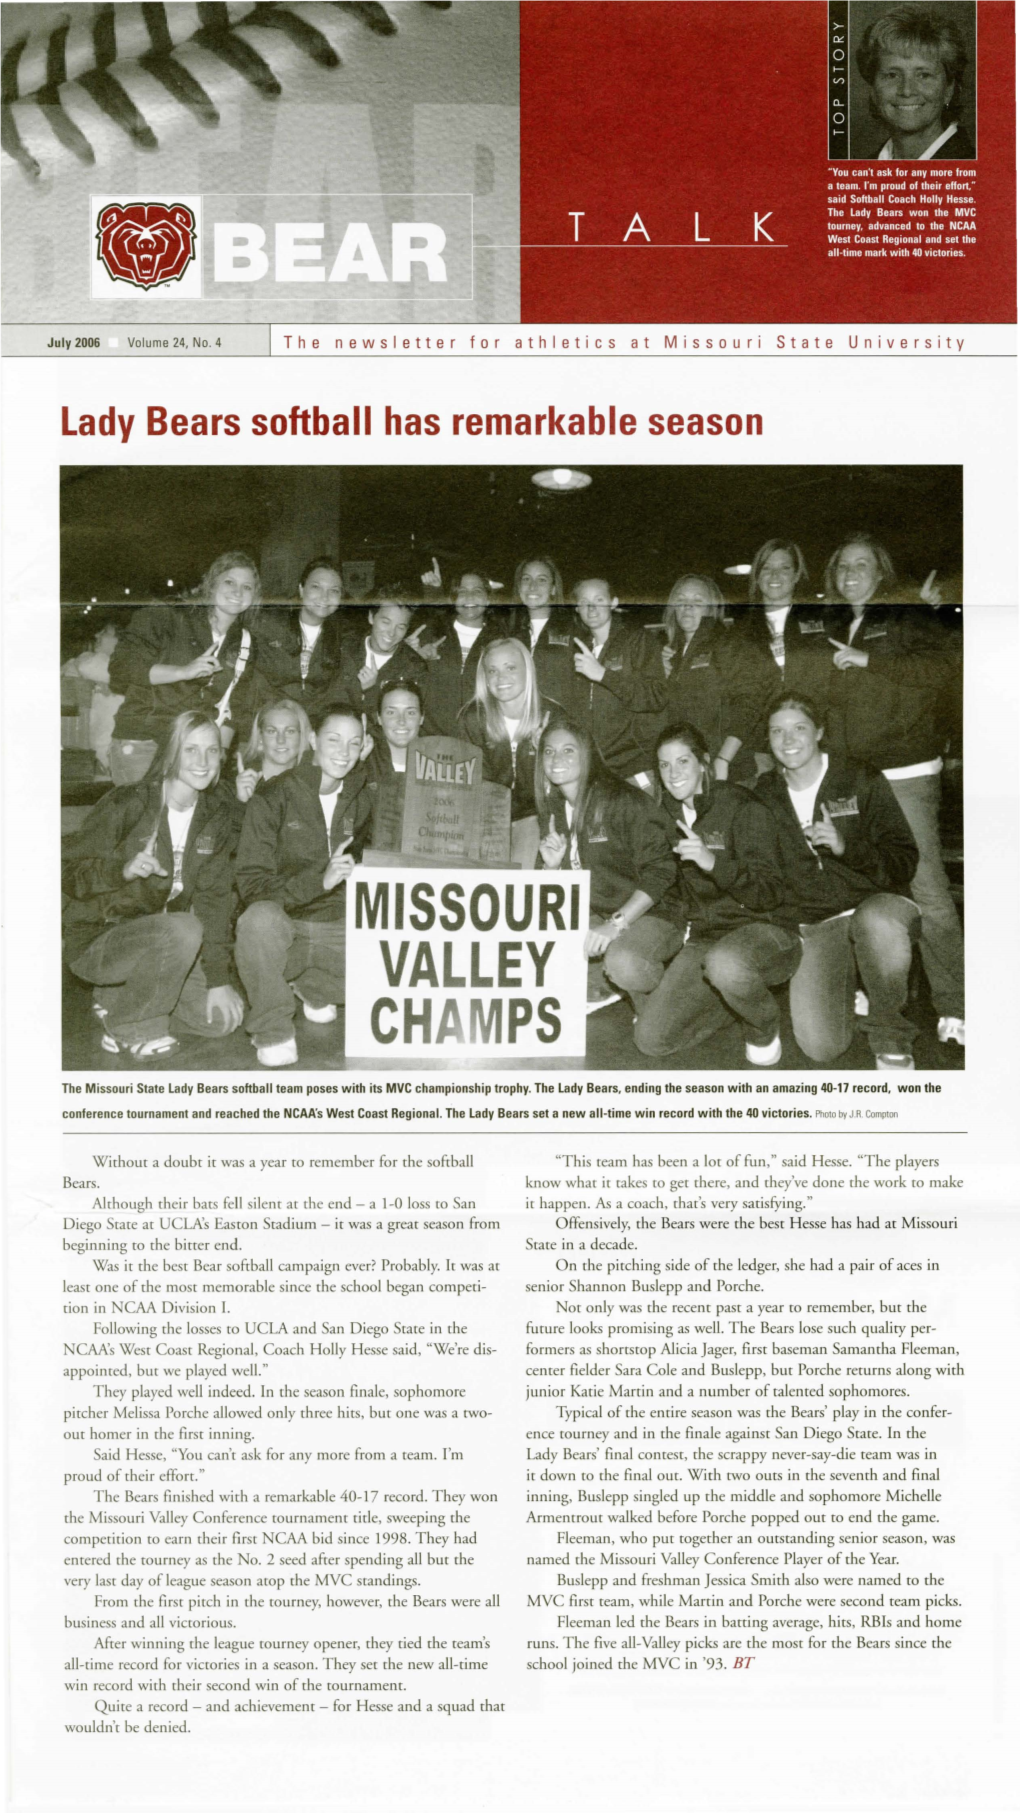 Lady Bears Softball Has Remarkable Season